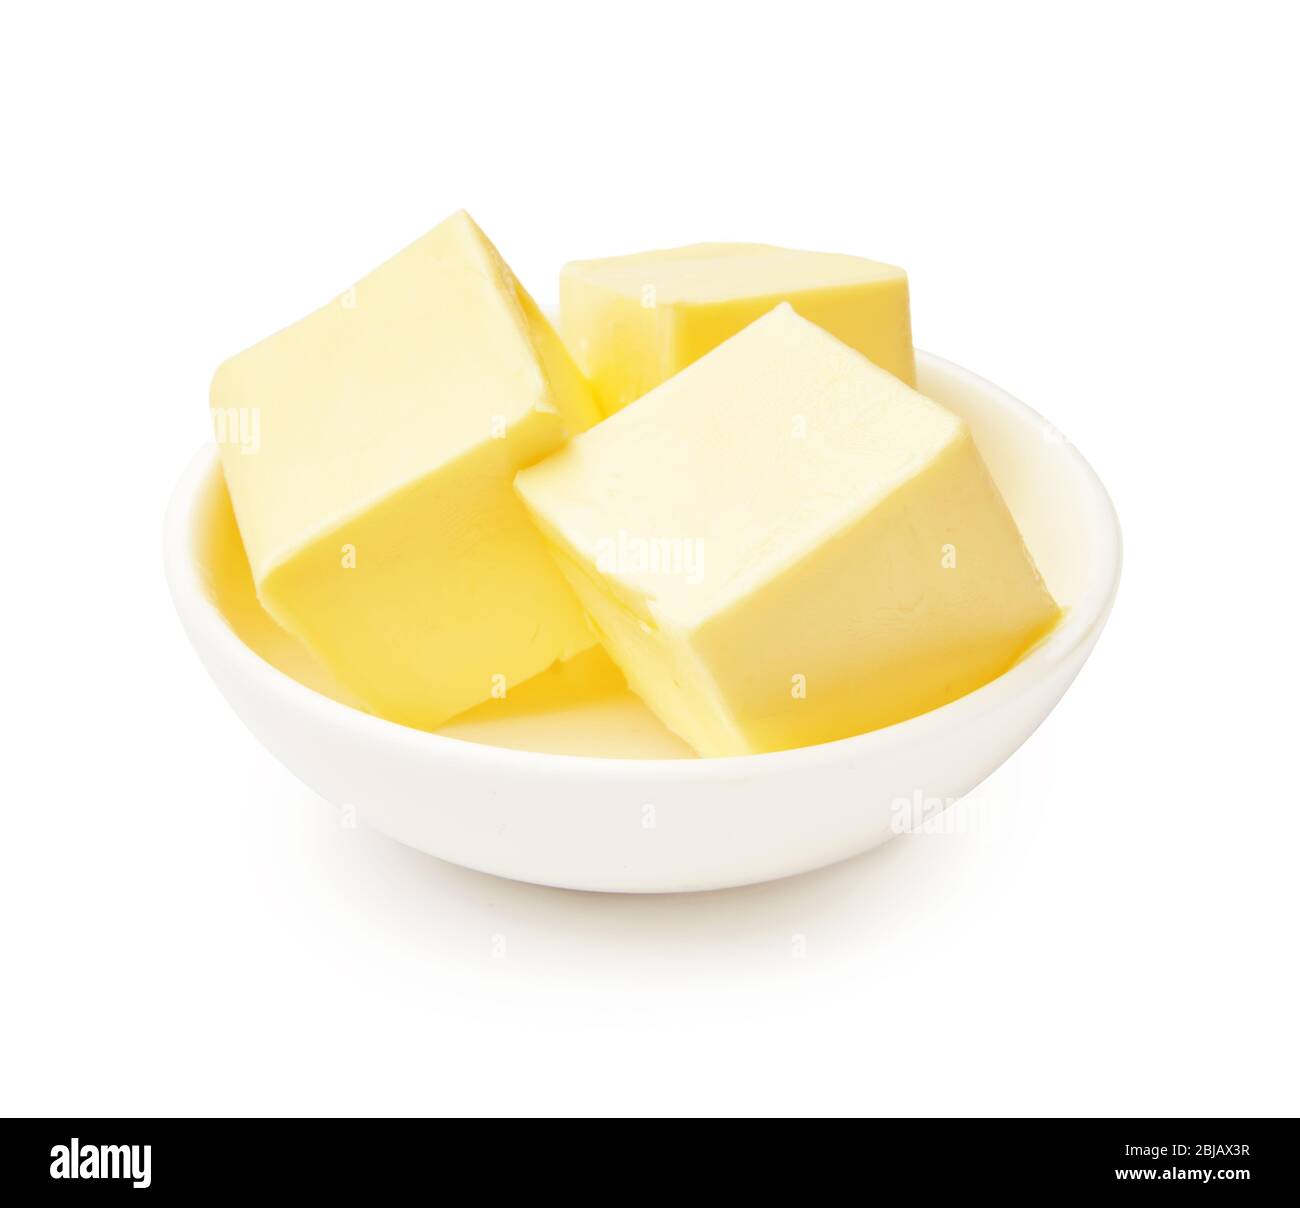 Morceaux de beurre dans un bol blanc isolés sur fond blanc. Cubes de beurre. Banque D'Images